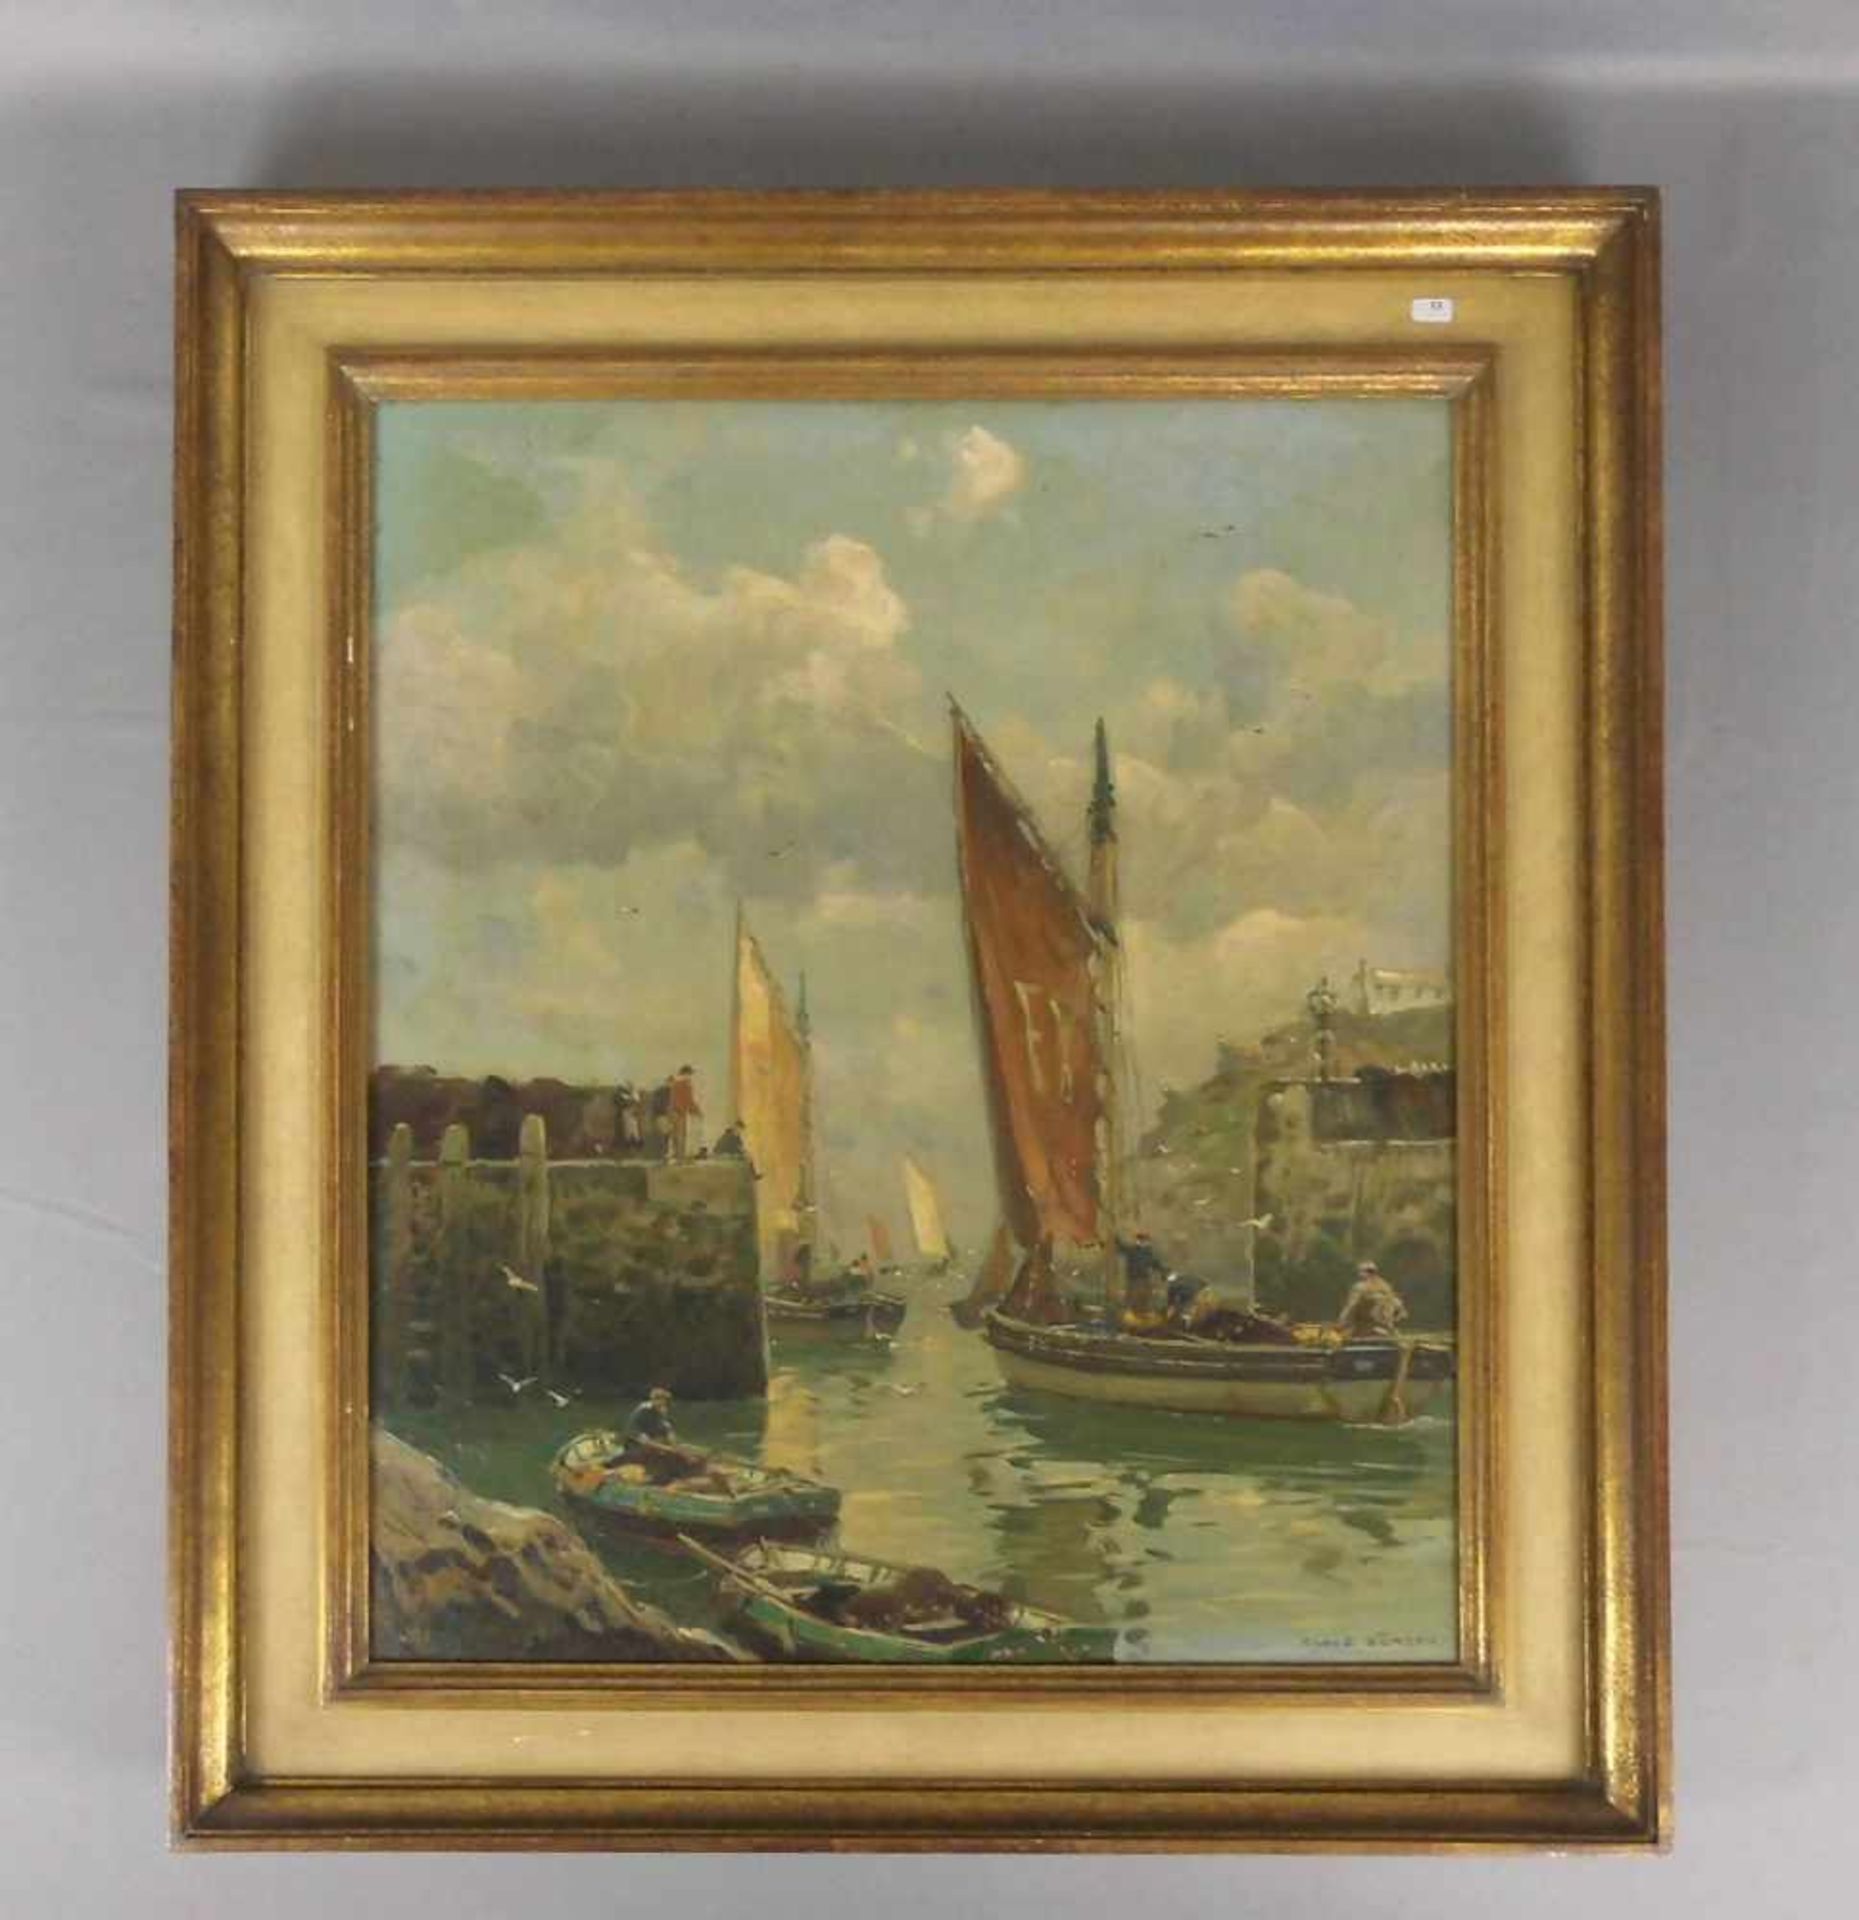 BERGEN, CLAUS (Stuttgart 1885-1964 Lenggries), Gemälde / painting: "Hafenszene", Öl auf